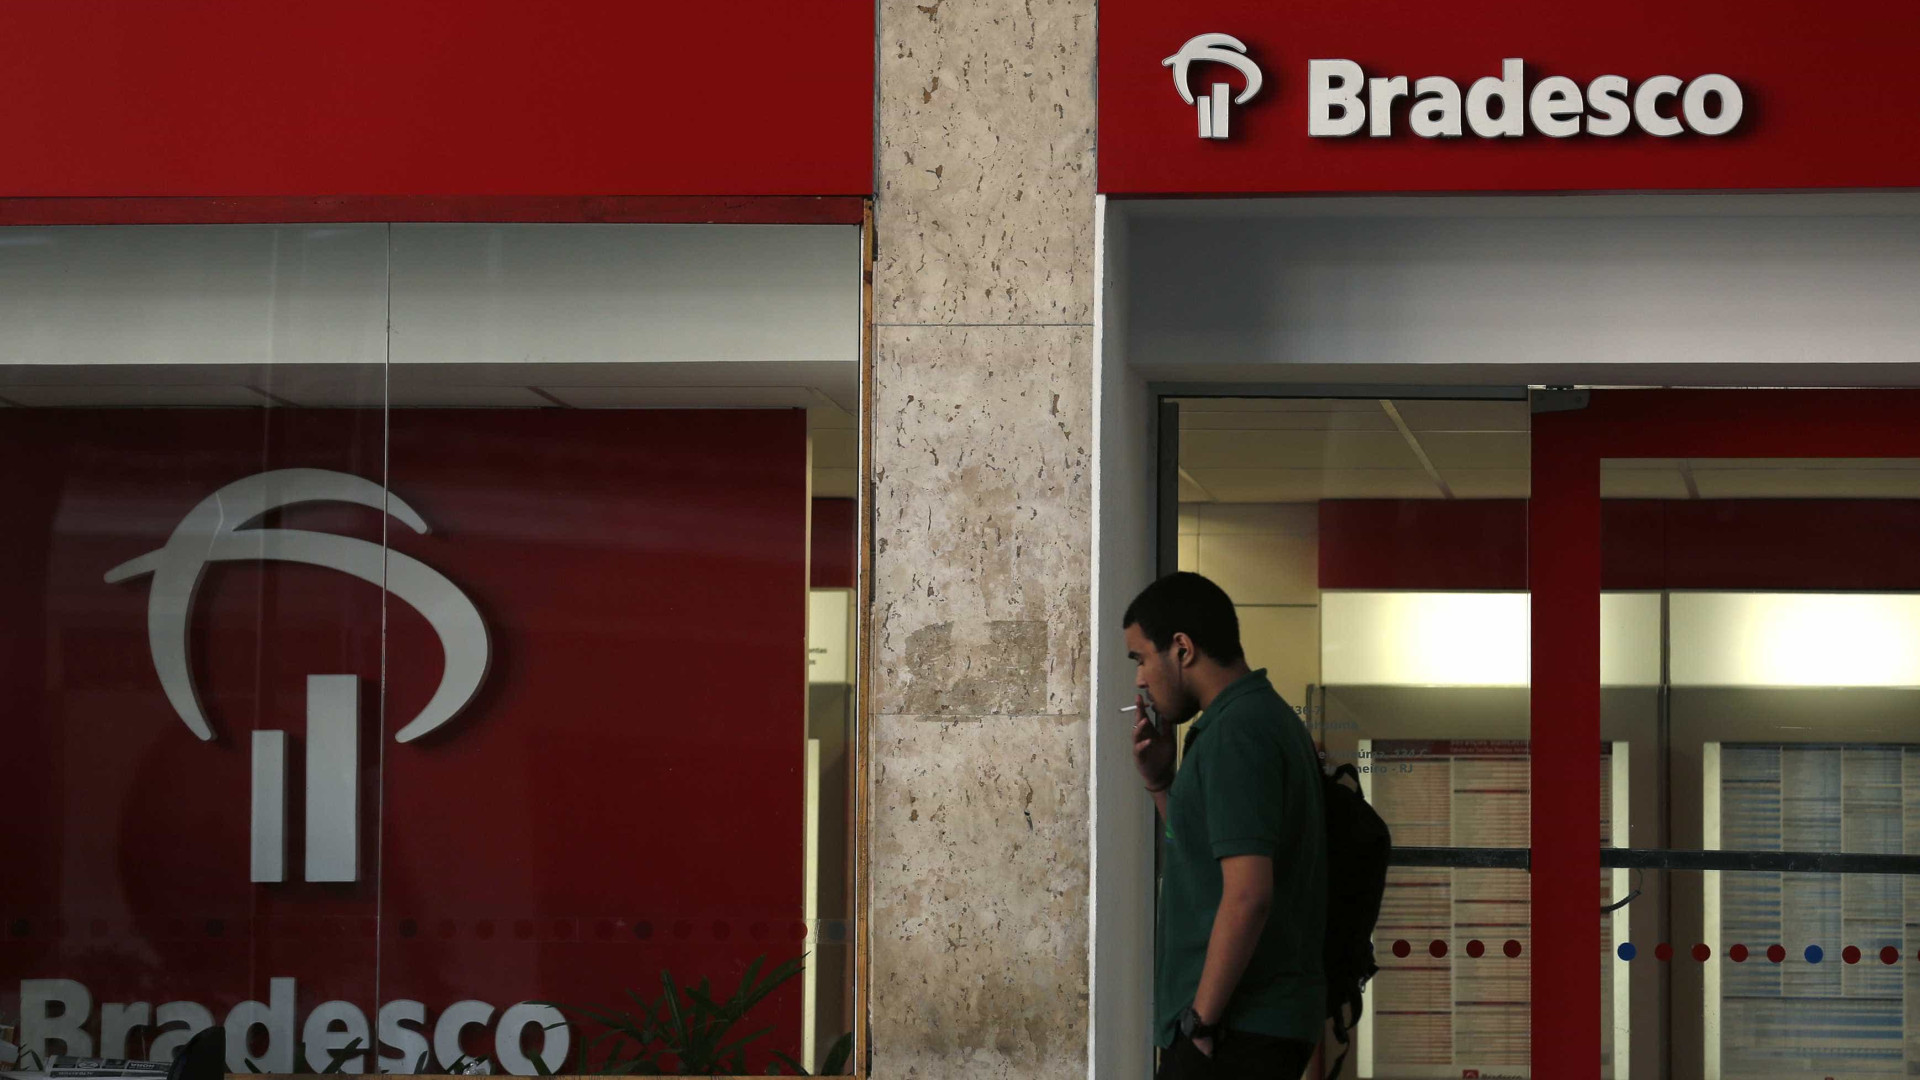 Dinheiro desaparecido preocupa correntistas do Bradesco mais de 30 horas depois